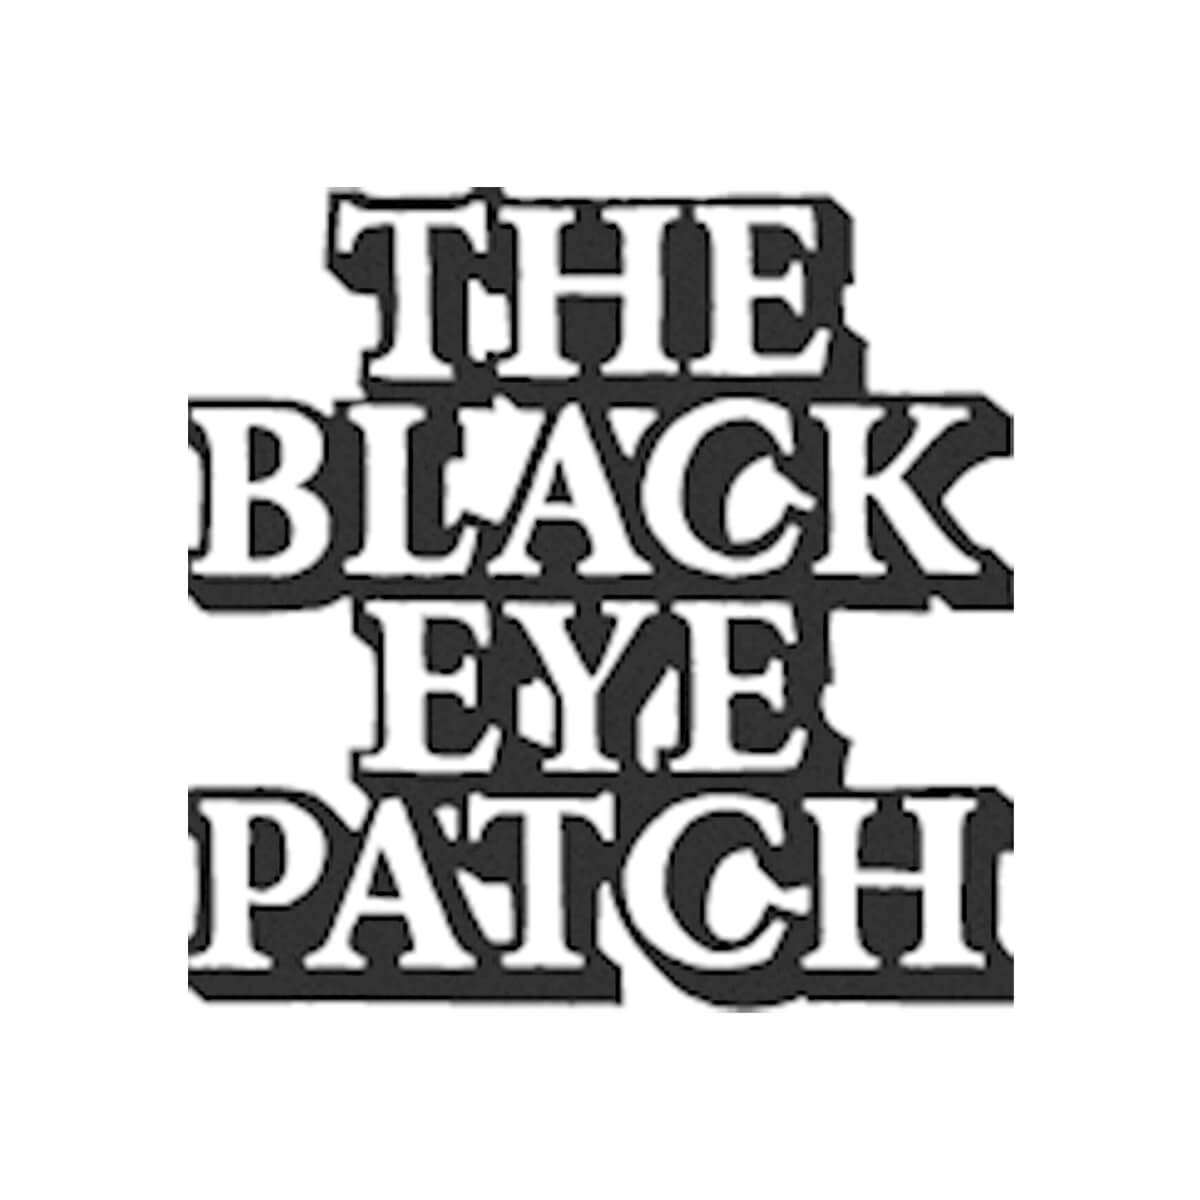 BlackEyePatch